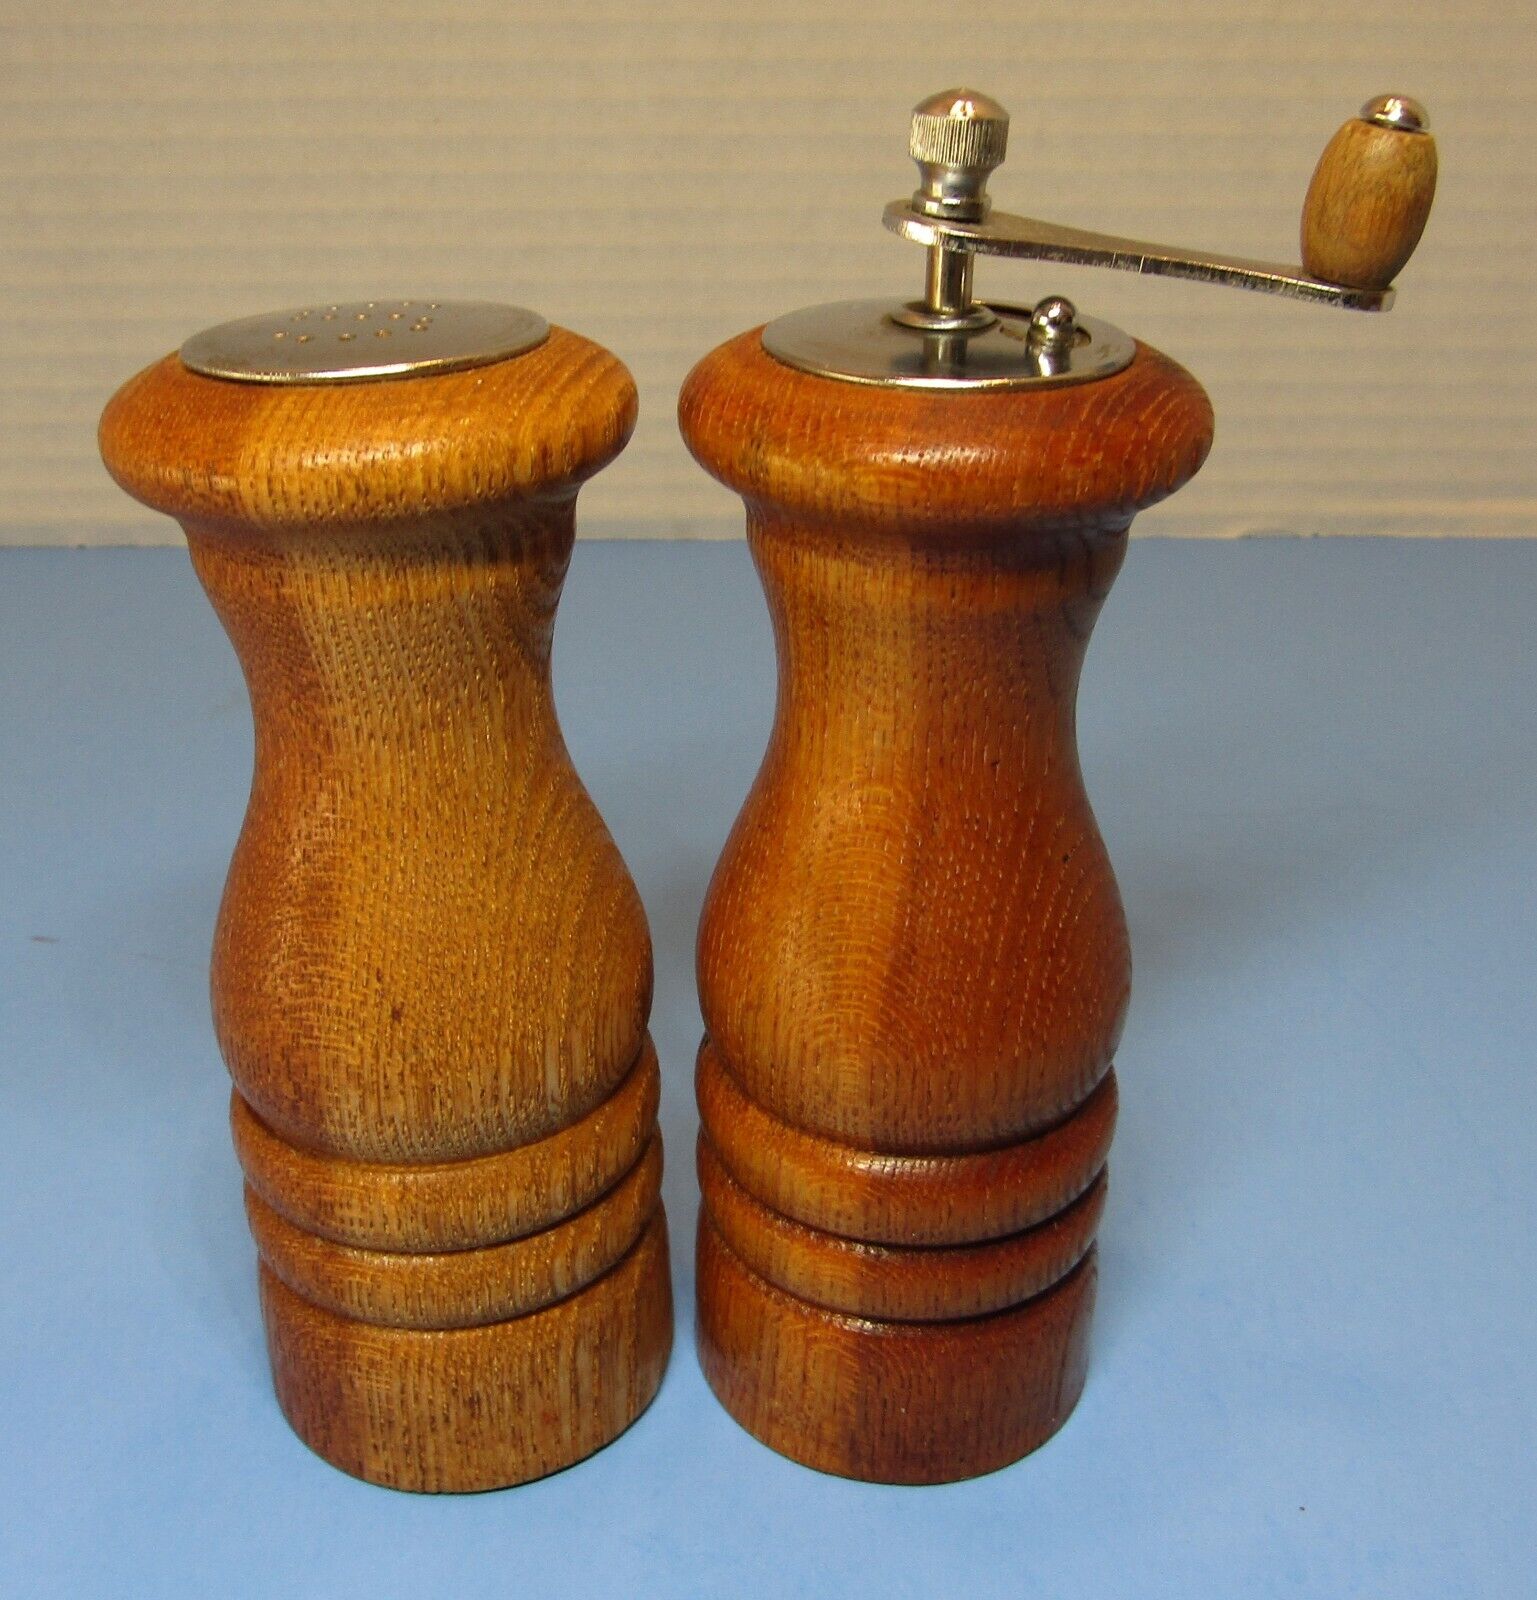 Wooden Salt Shaker and Pepper Grinder ~Made in Japan~